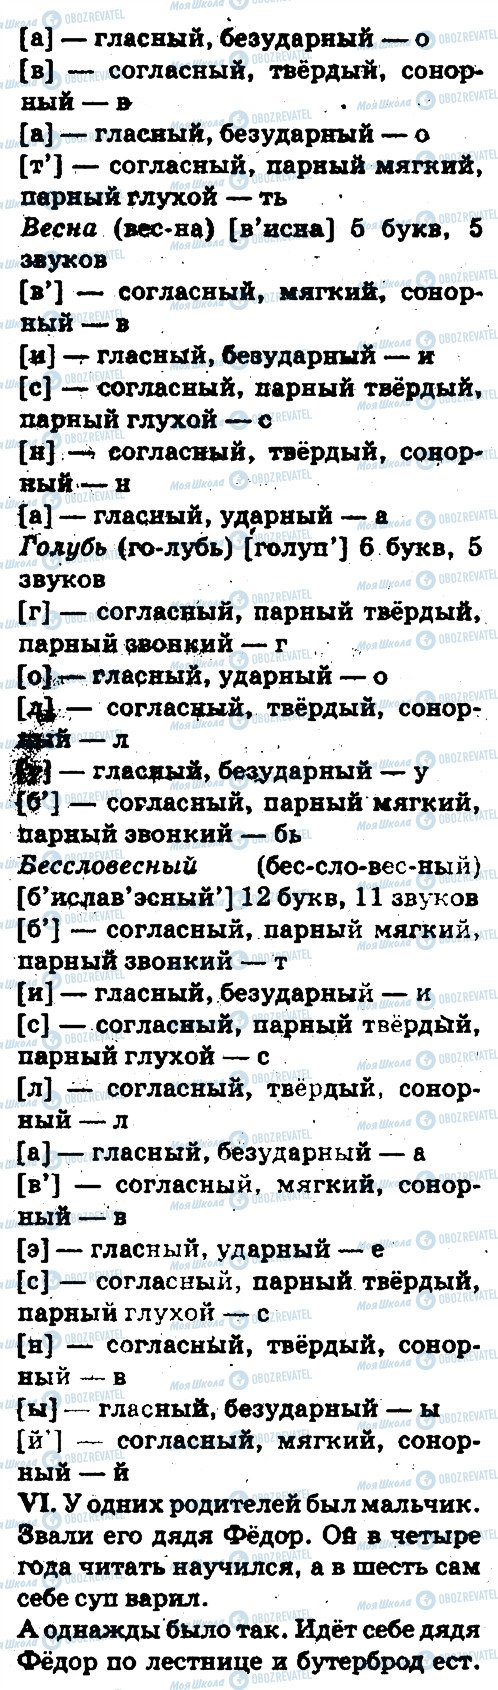 ГДЗ Русский язык 5 класс страница 138